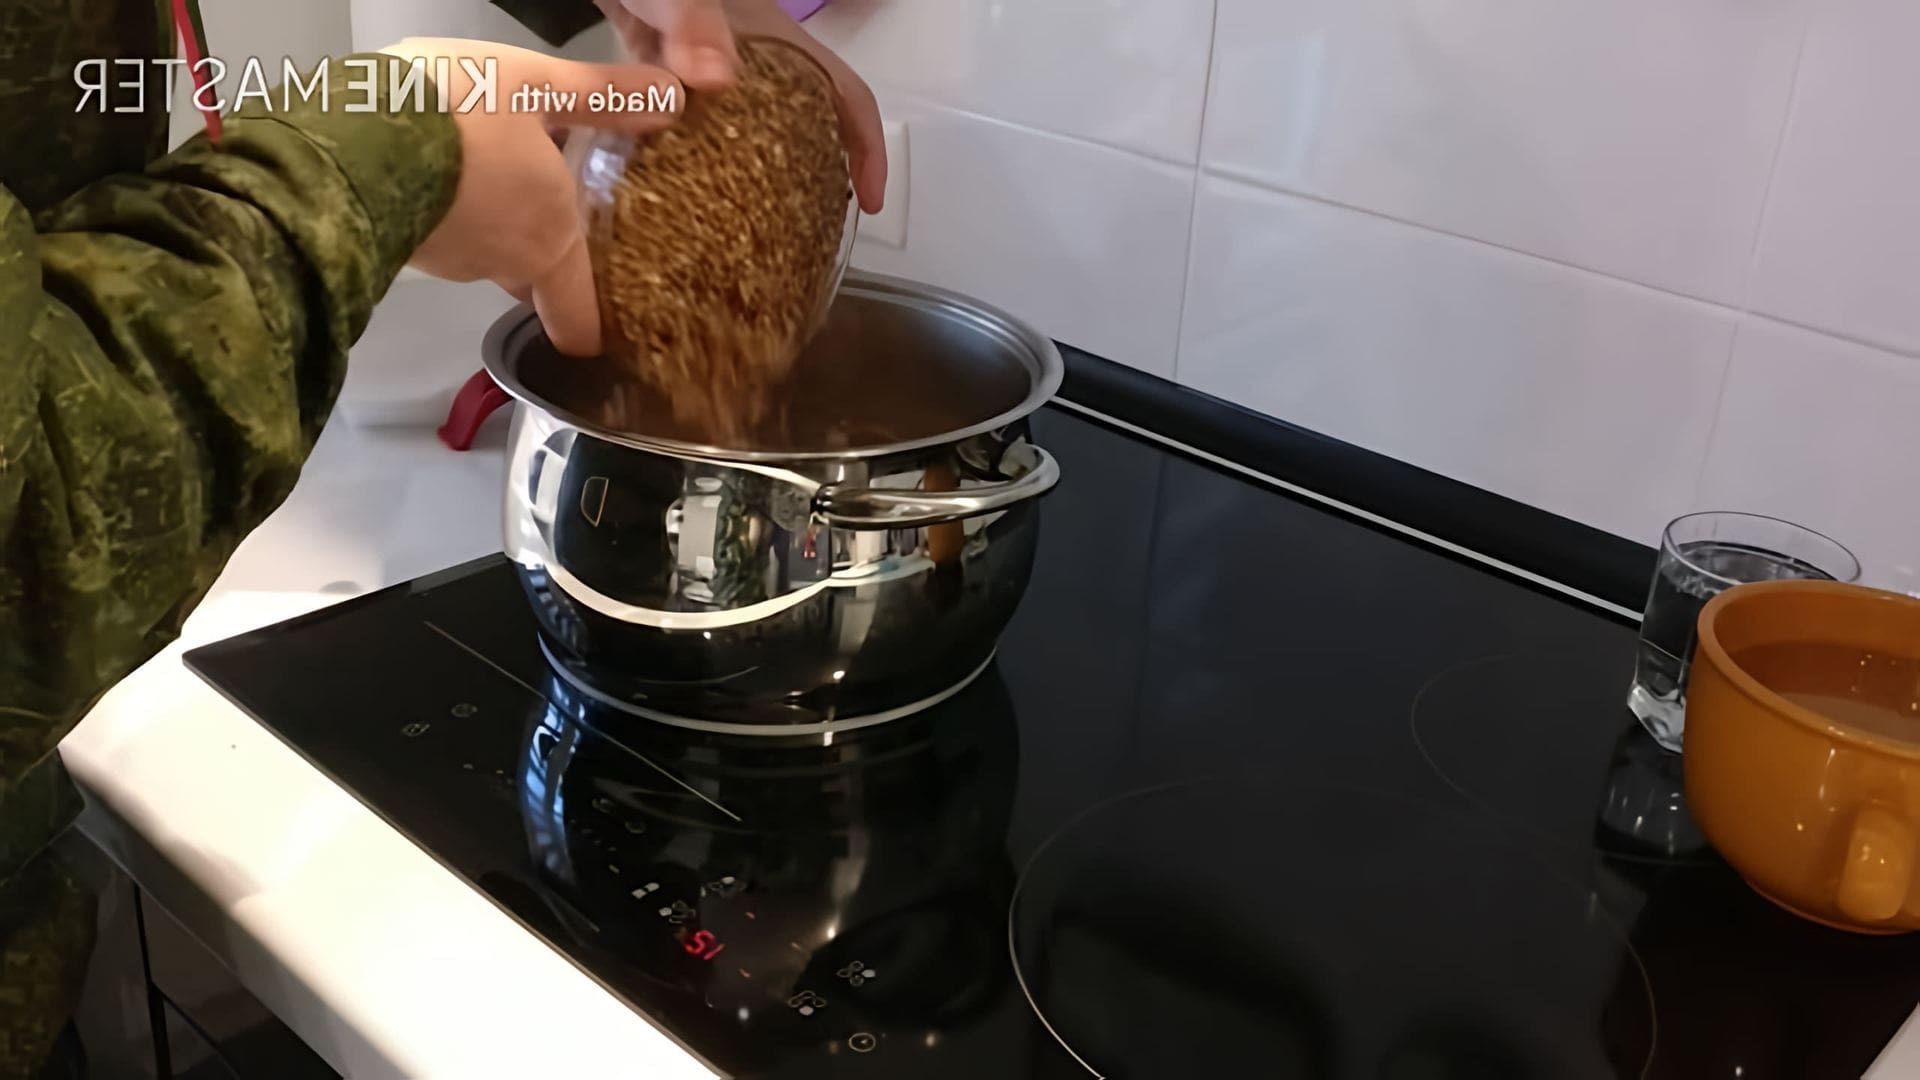 Солдатская гречневая каша с тушёнкой по-армейски - это видео-ролик, который демонстрирует процесс приготовления вкусного и сытного блюда, которое было популярным в армии